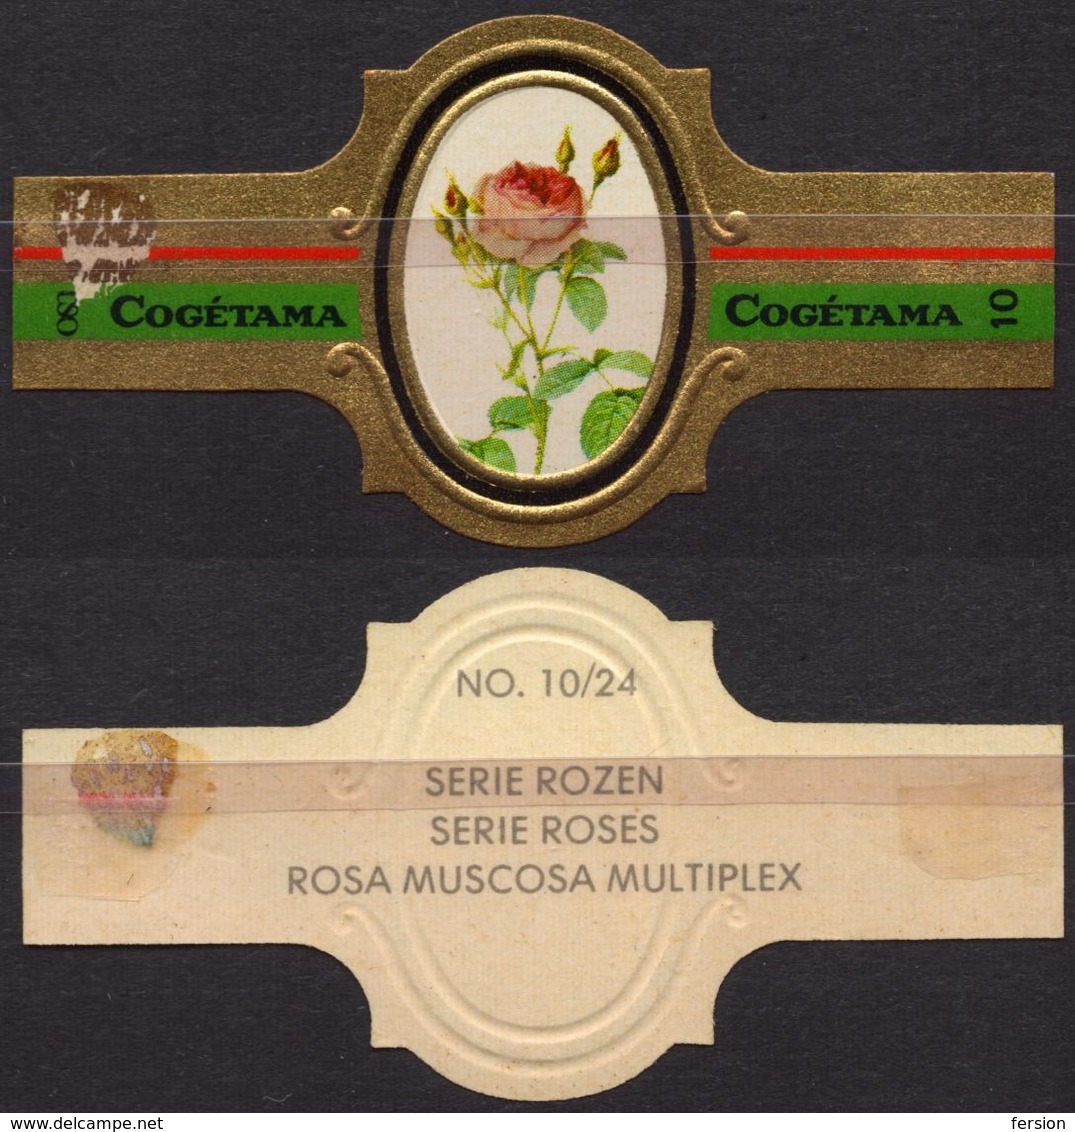 Muscosa Multiplex - ROSE ROSES - Netherlands Holland / Cogétama / CIGAR CIGARS Label Vignette - Labels